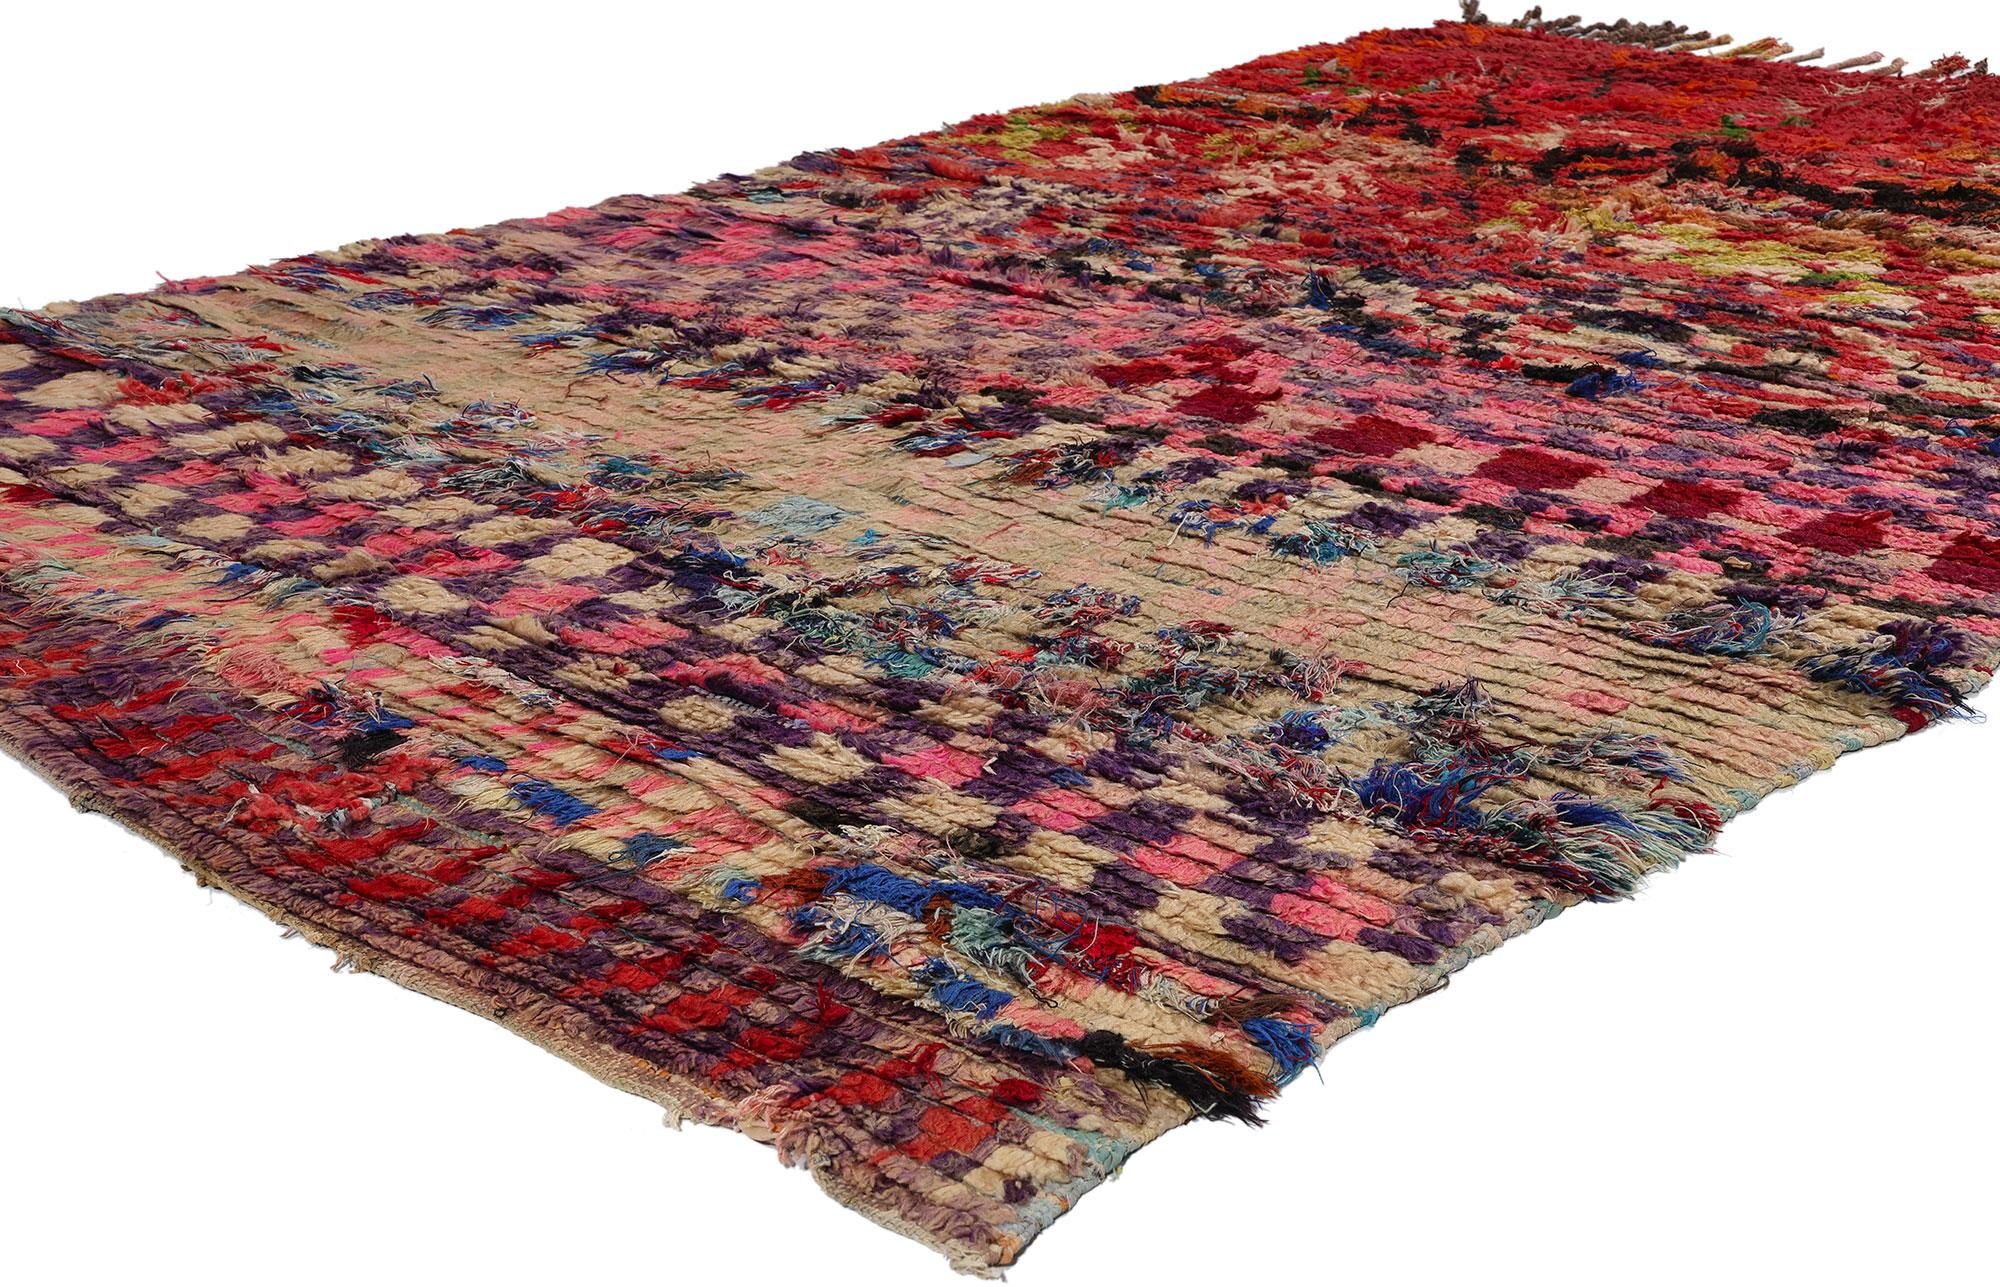 21816 Tapis Marocain Vintage Boucherouite Boujad, 05'00 x 08'05. Célébrez l'esprit vibrant des tapis Boujad Boucherouite, originaires de la ville animée de Boujad dans la région de Khouribga. Ces tapis marocains sont appréciés pour leurs designs